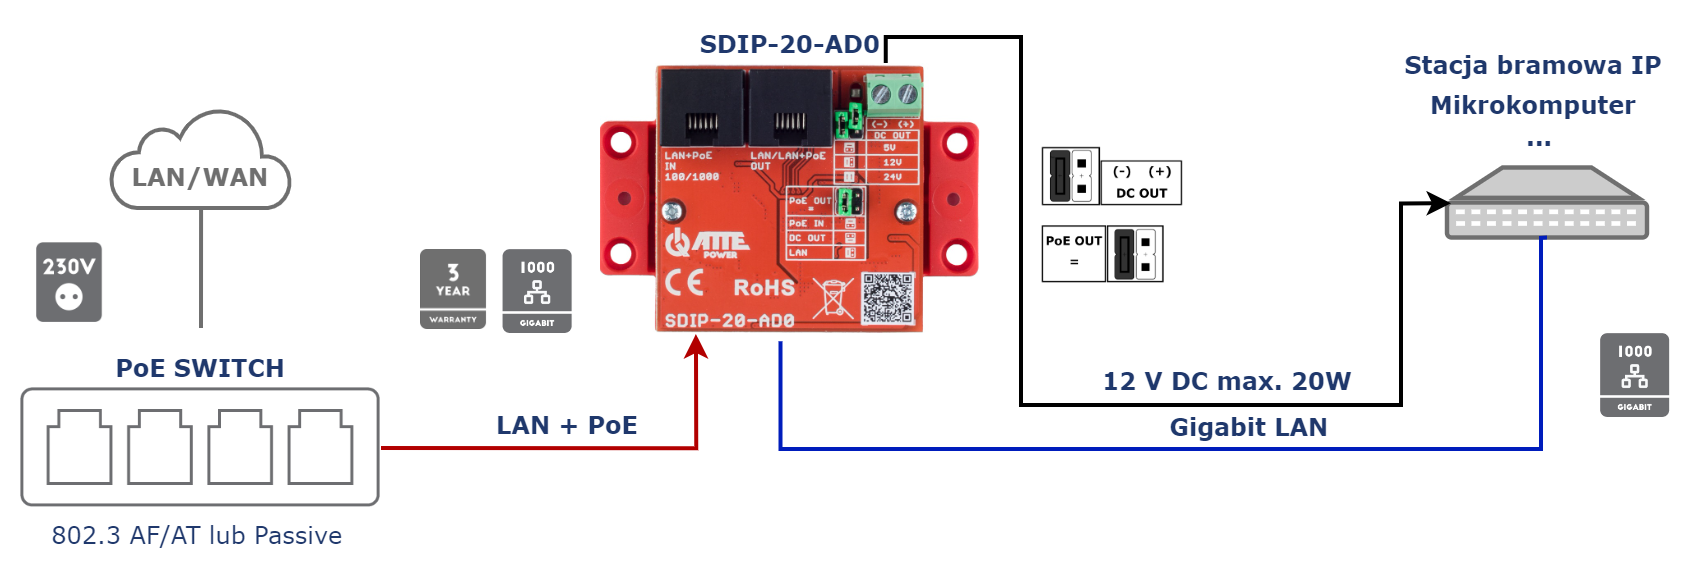 SDIP-20-AD0_LANOut_DC12Vout_Iot.png